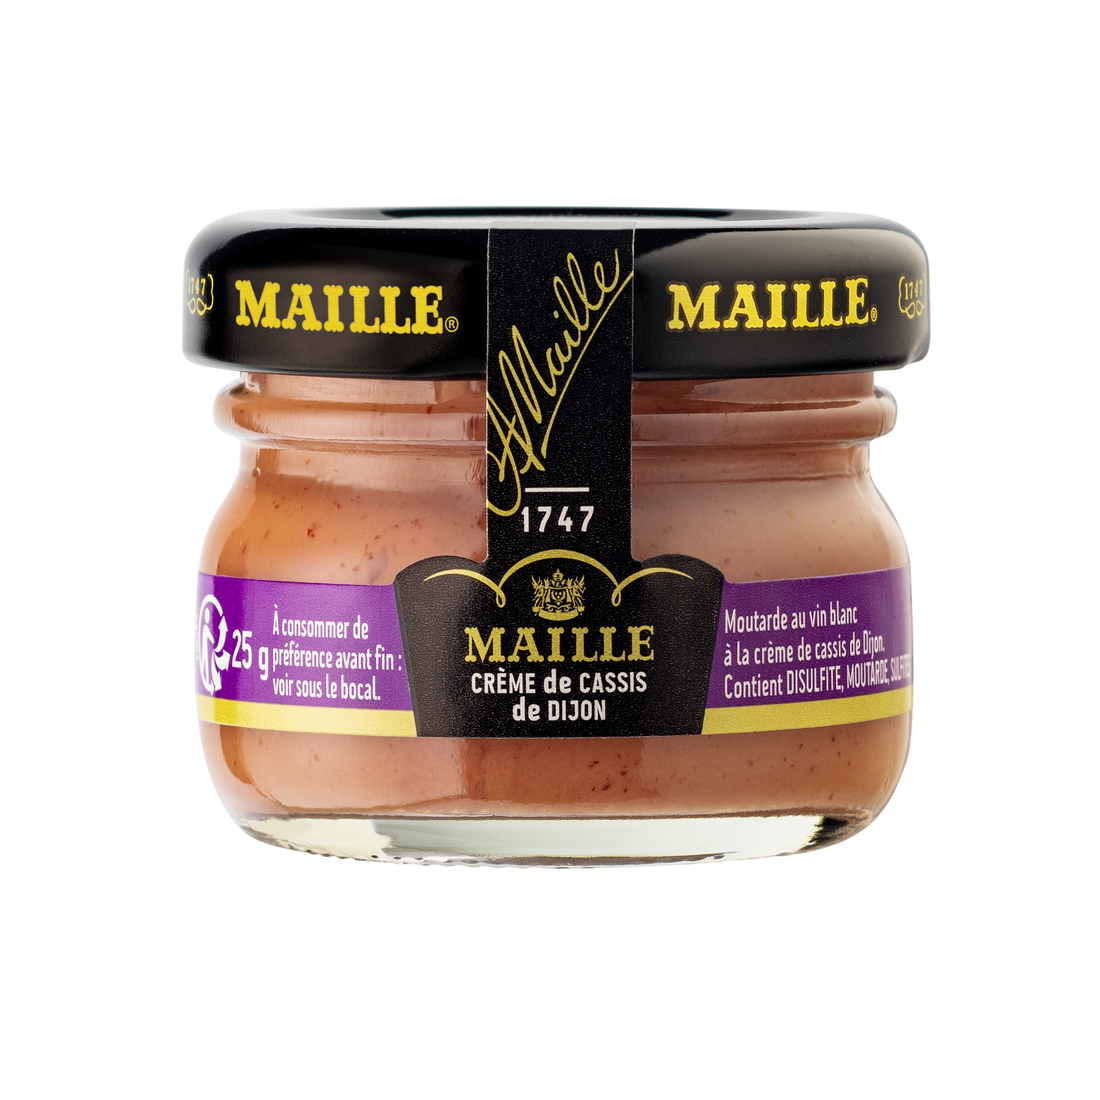 PACKSHOT - Maille - Mini bundle Creme de Cassis de Dijon